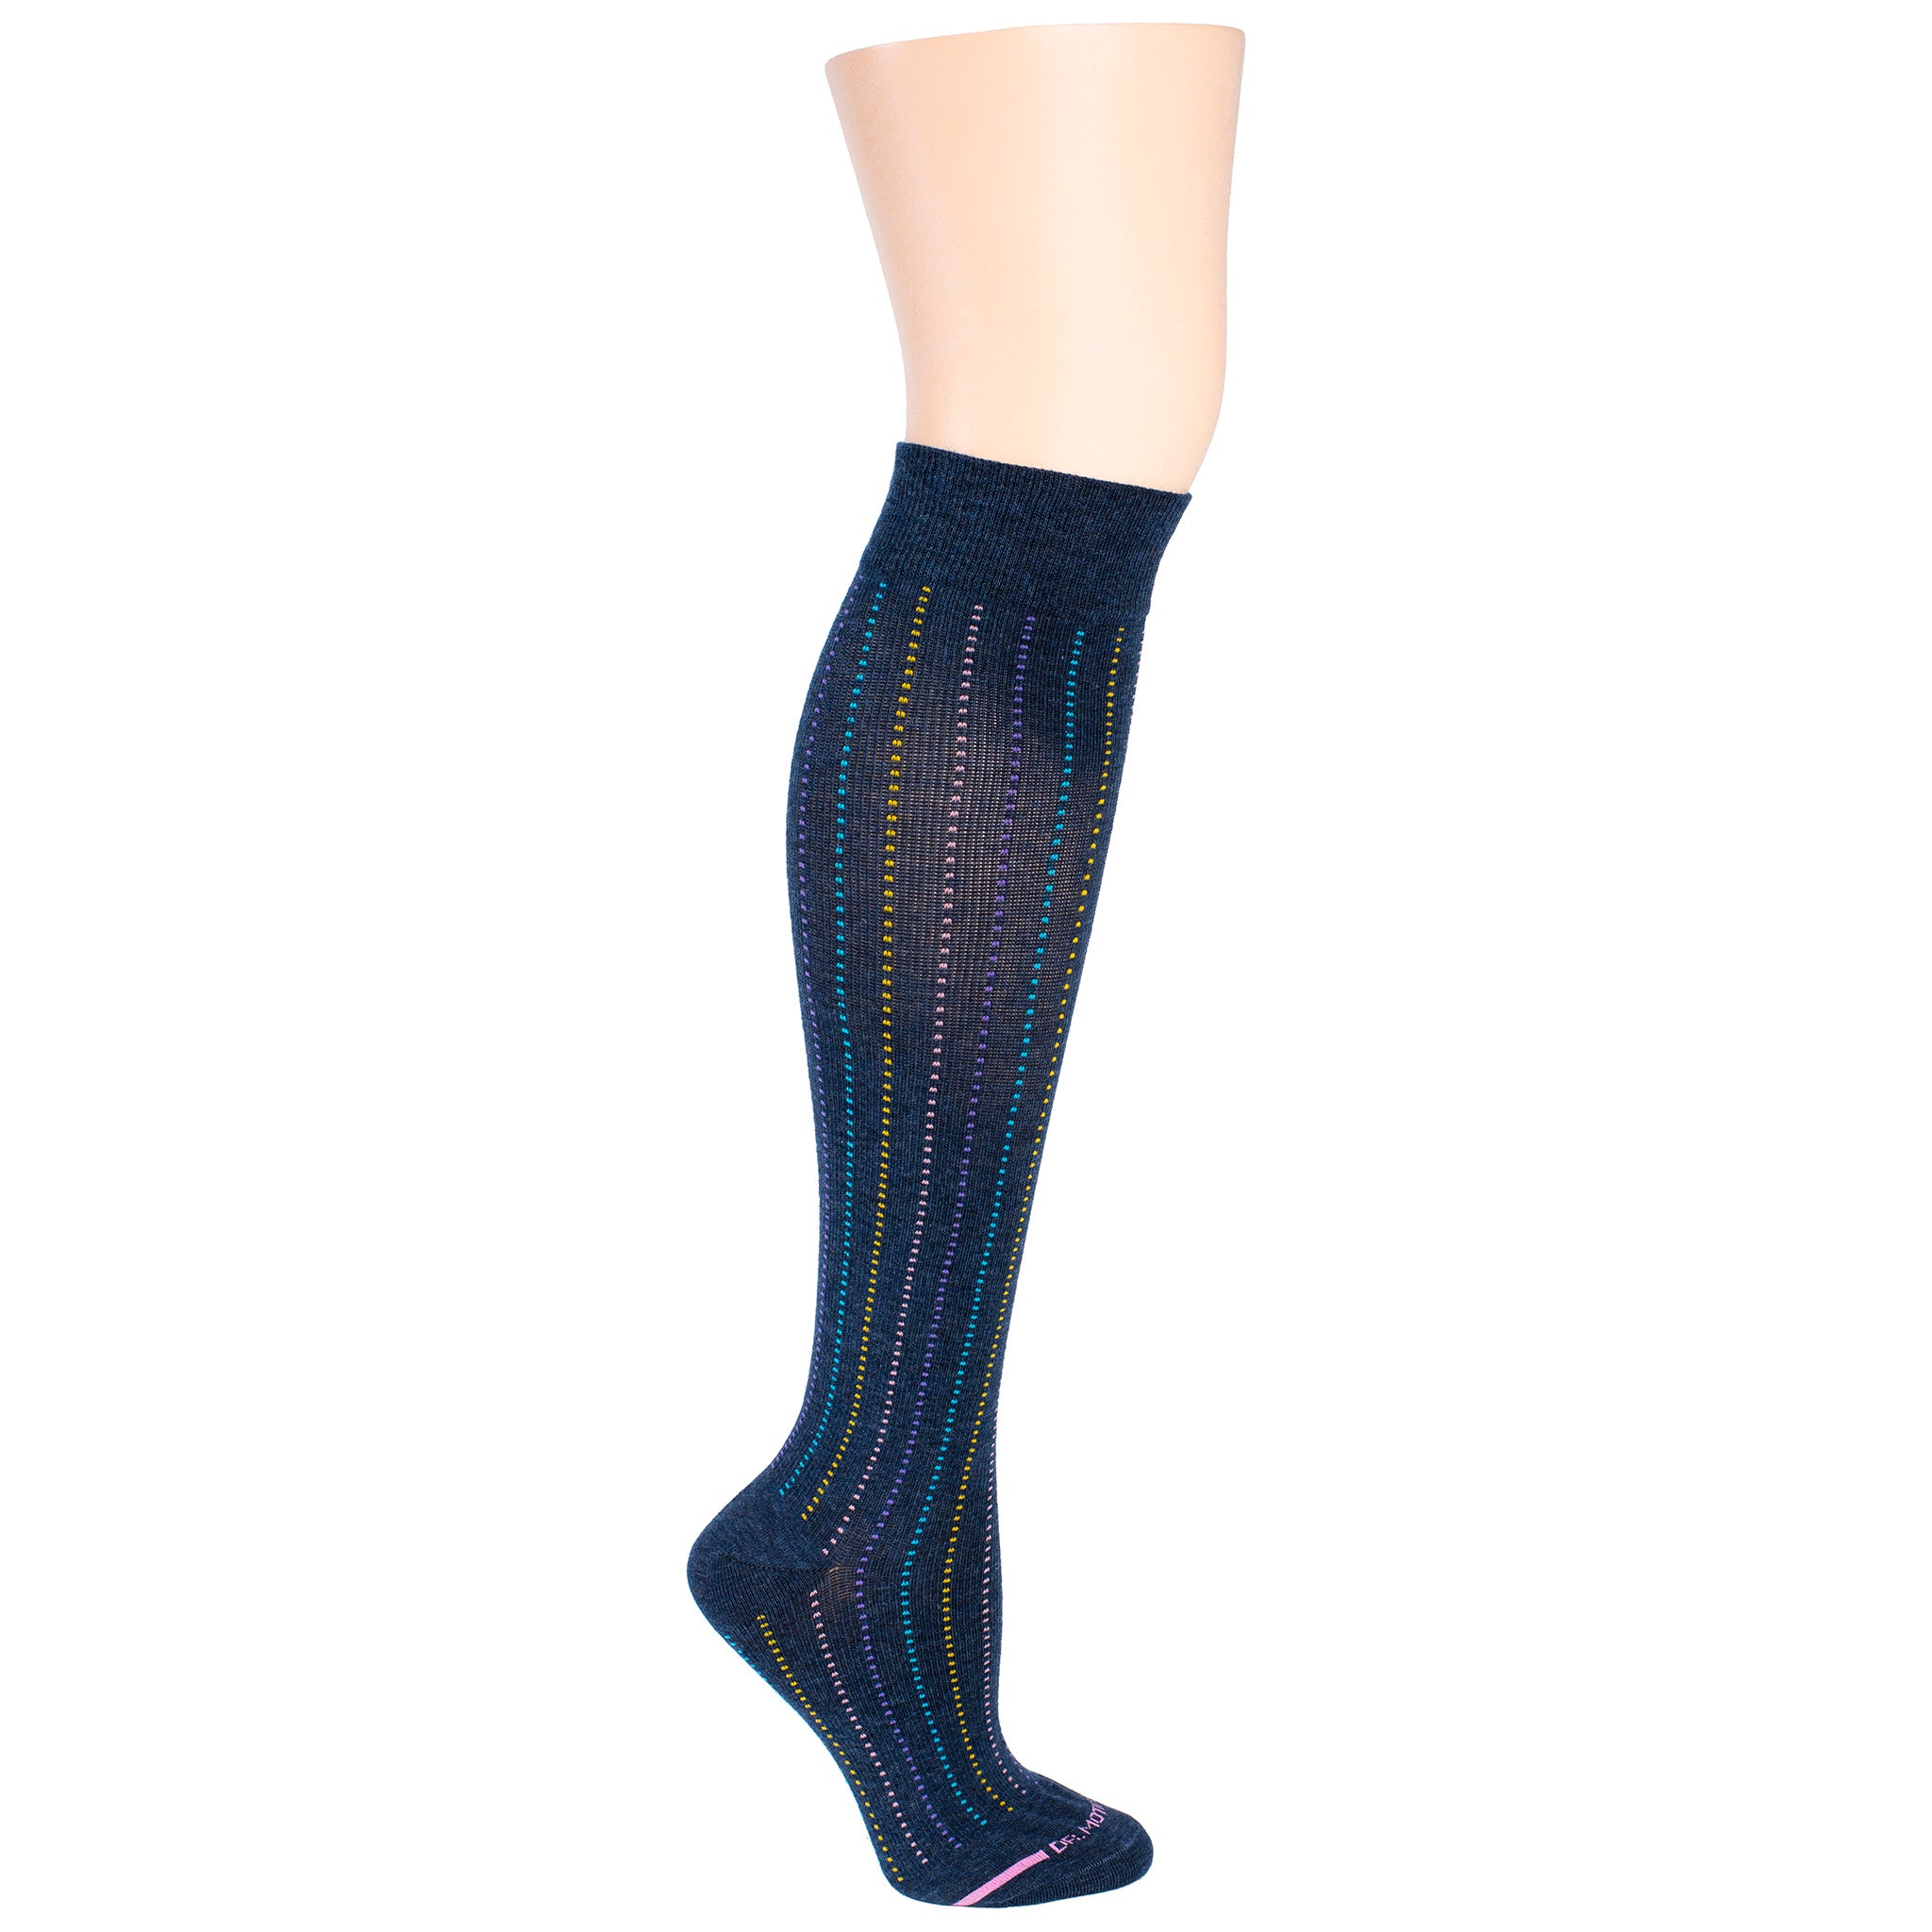 Broken Vertical Stripe | Knee-High Compression Socks For Women